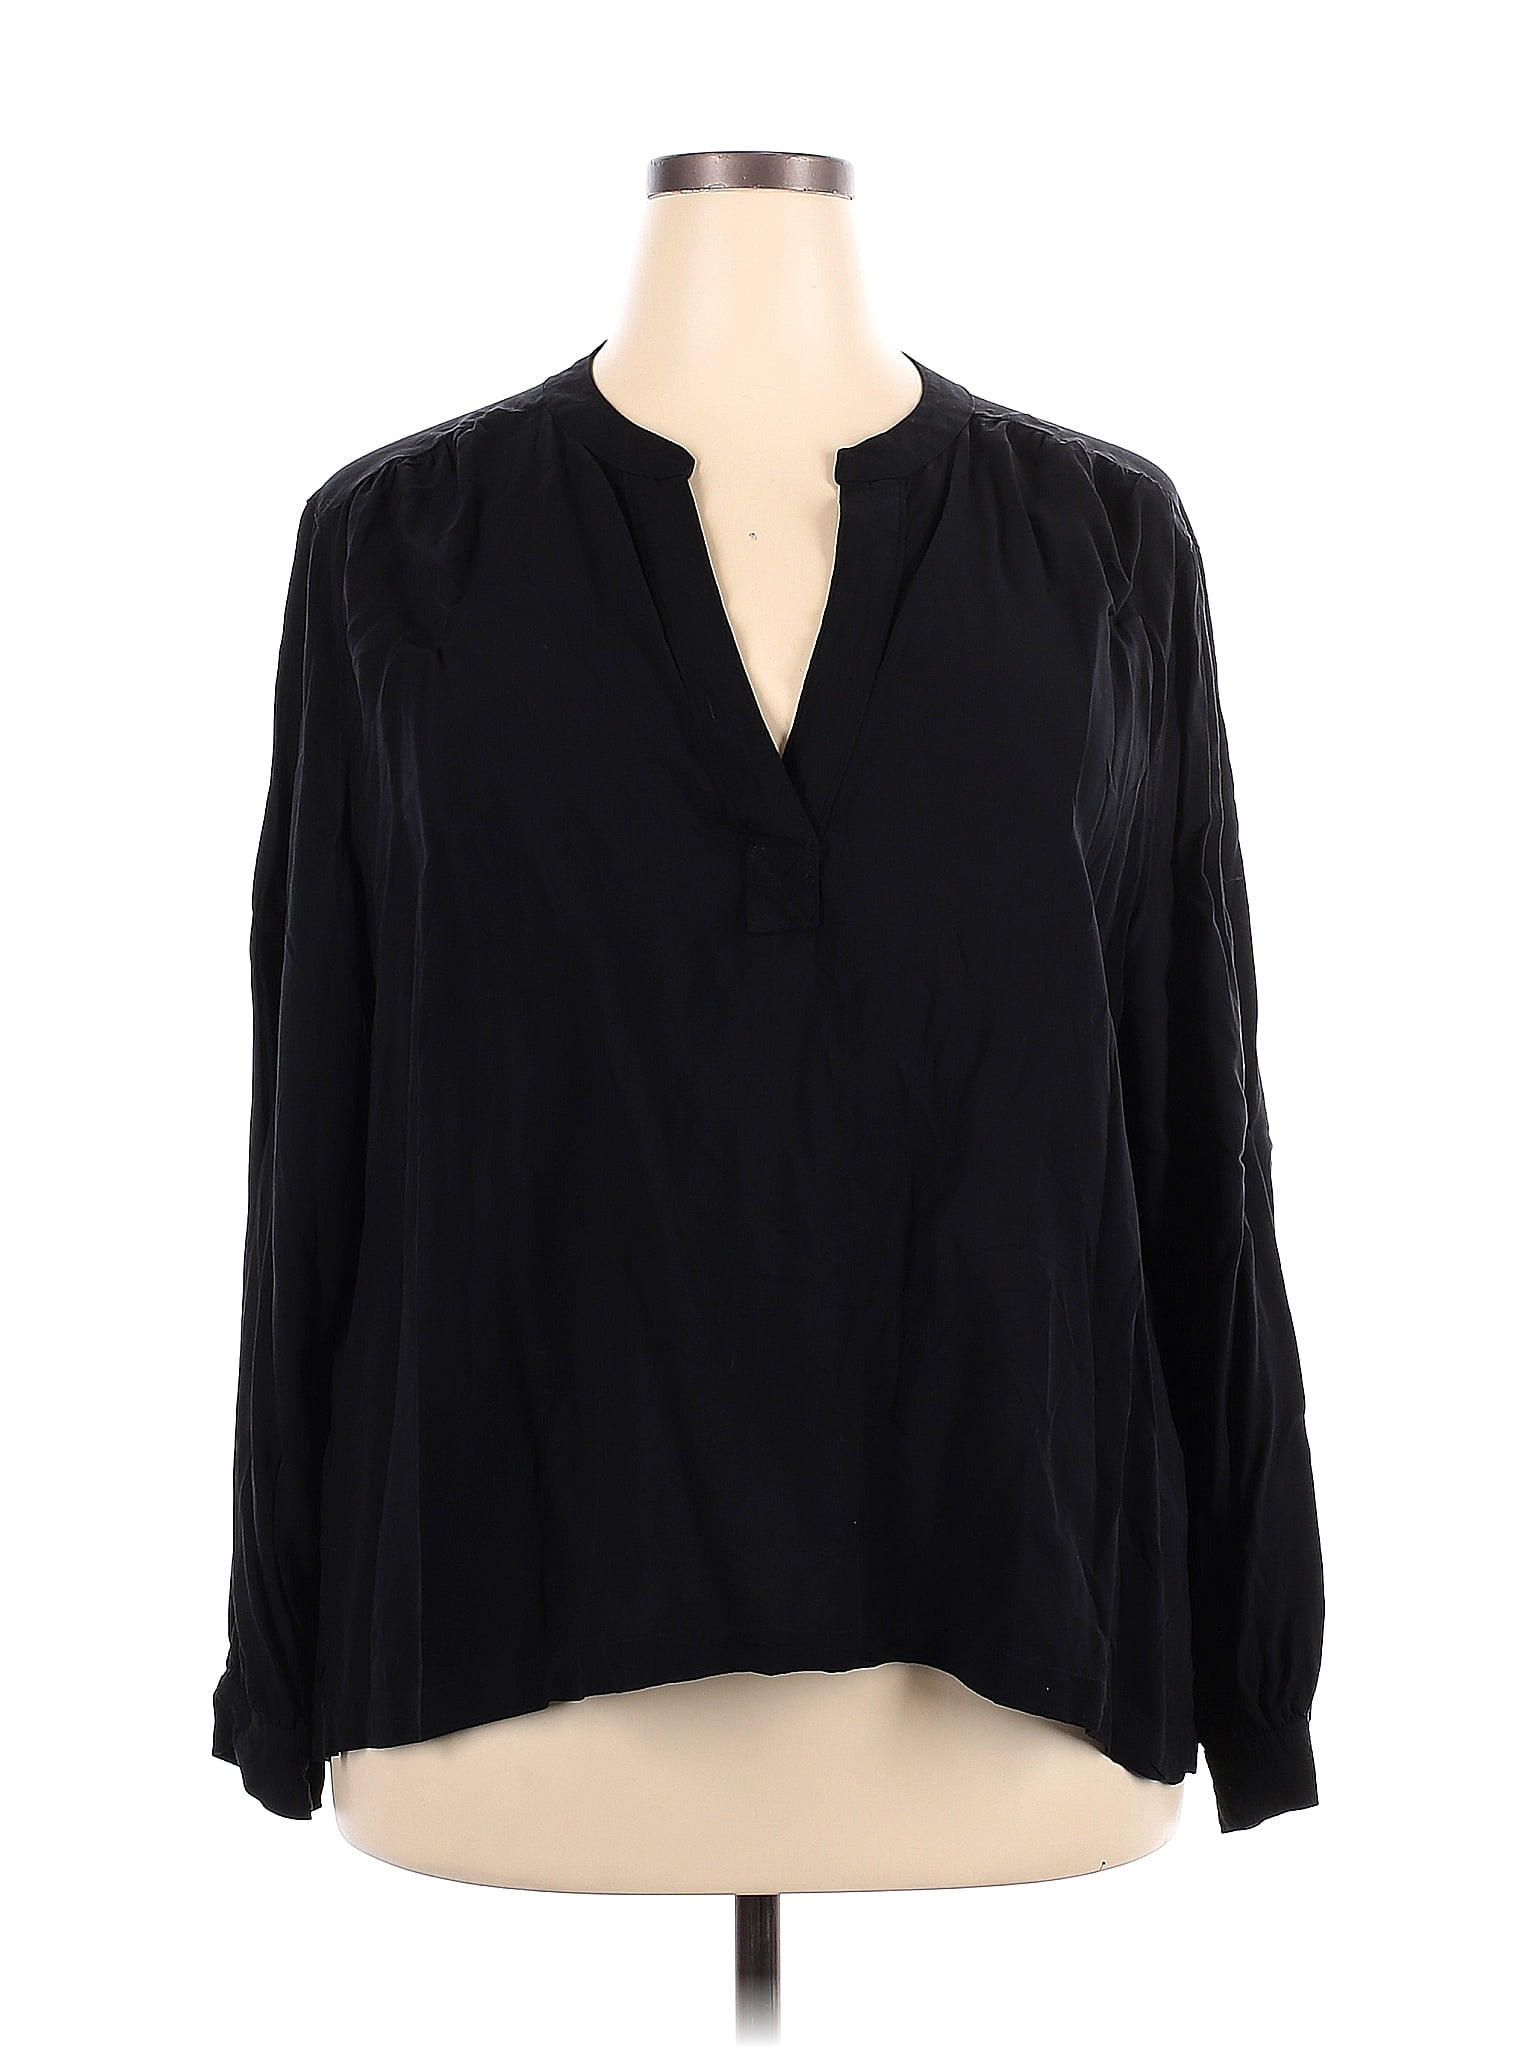 Gap 100% Rayon Black Long Sleeve Blouse Size XXL - 64% off | thredUP